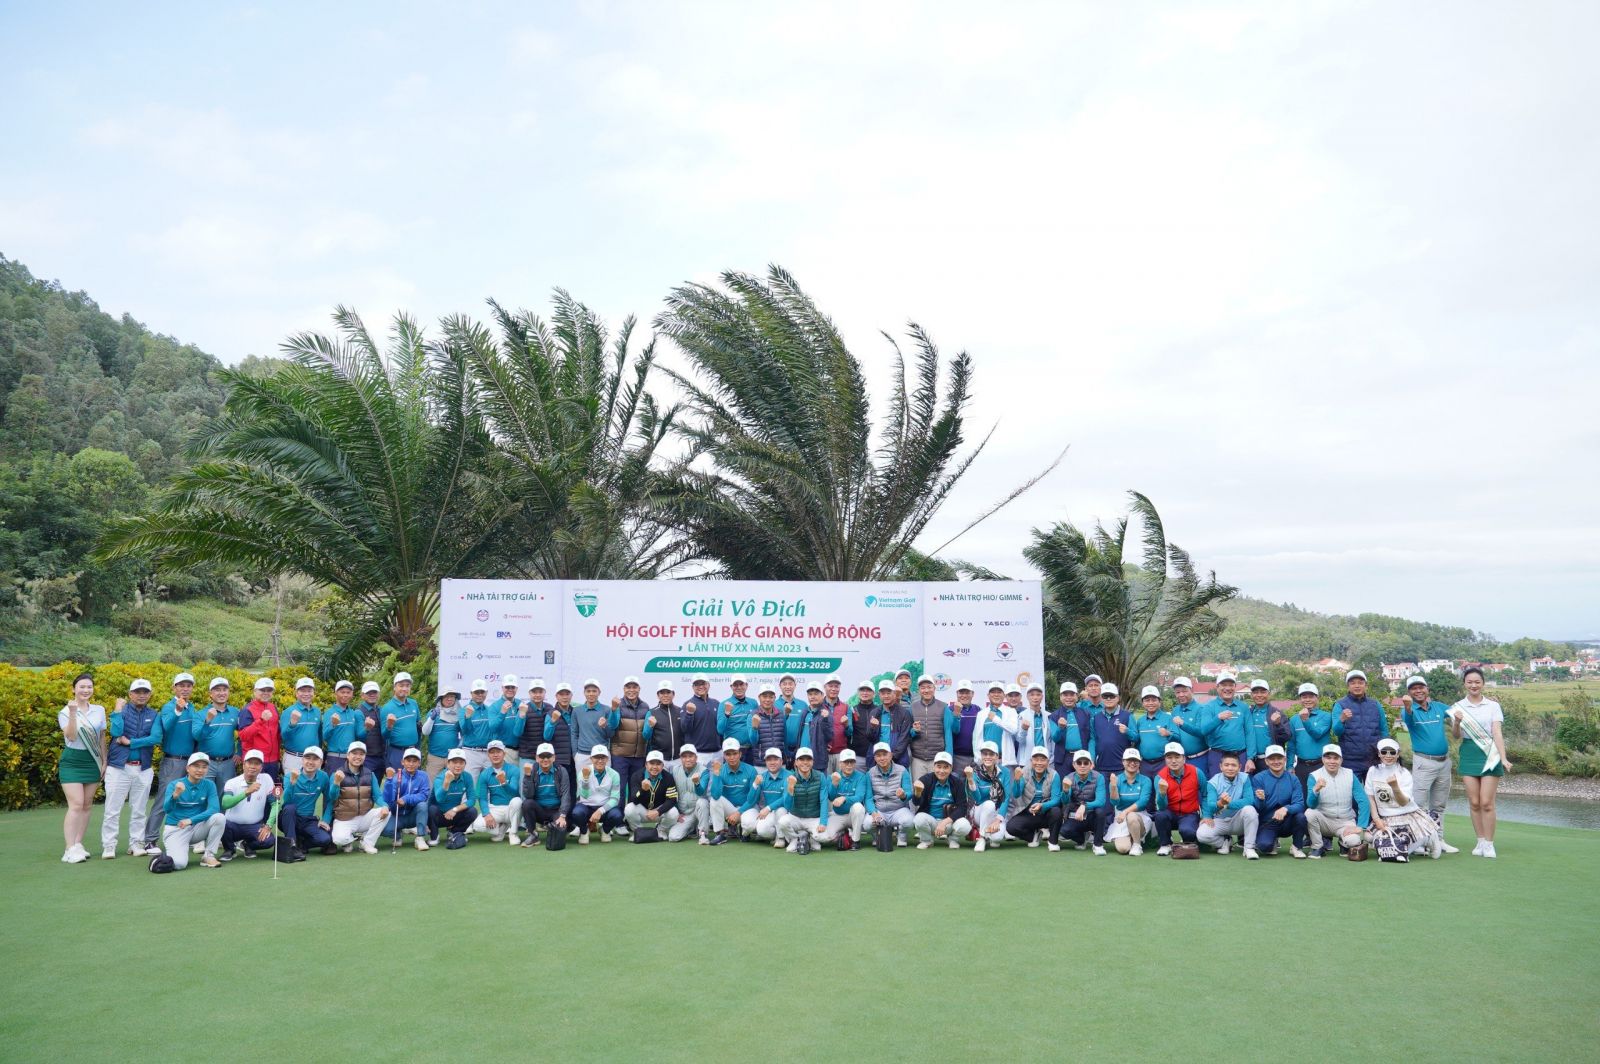 Giải vô địch Hội golf tỉnh Bắc Giang mở rộng lần thứ XX chào mừng Đại hội nhiệm kỳ 2023 - 2028 thành công tốt đẹp